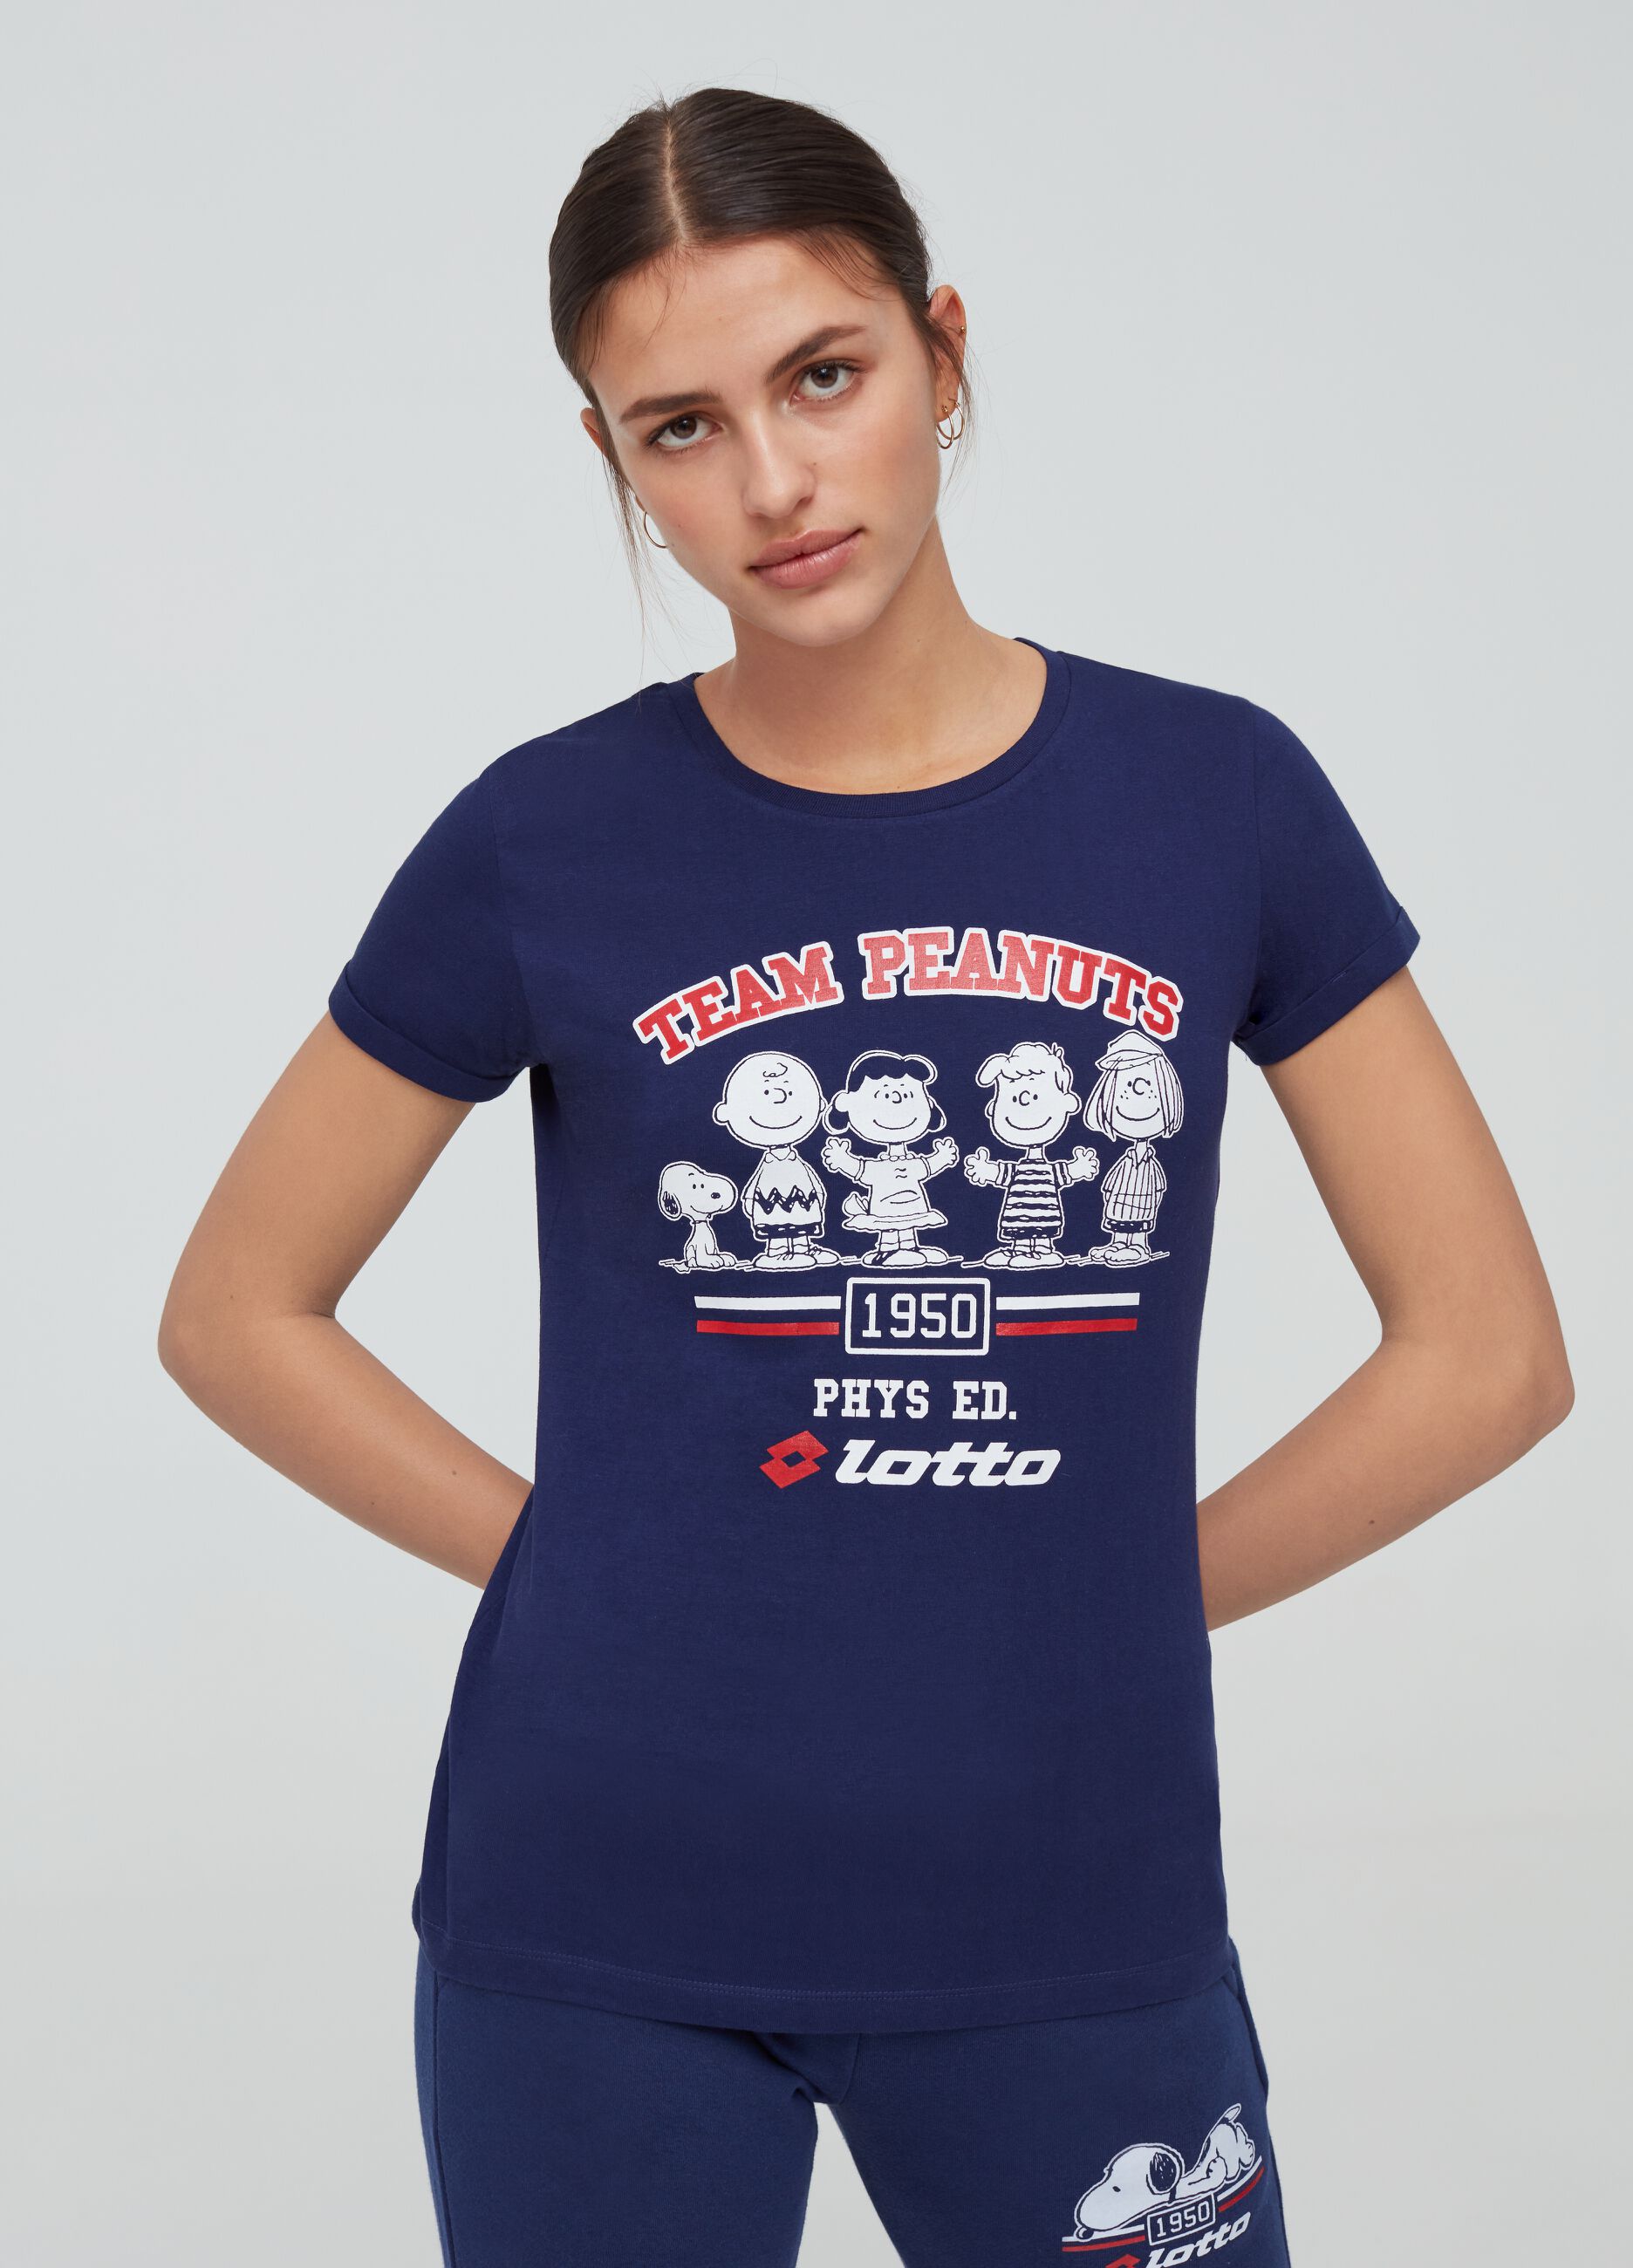 Camiseta estampado Lotto personajes Peanuts